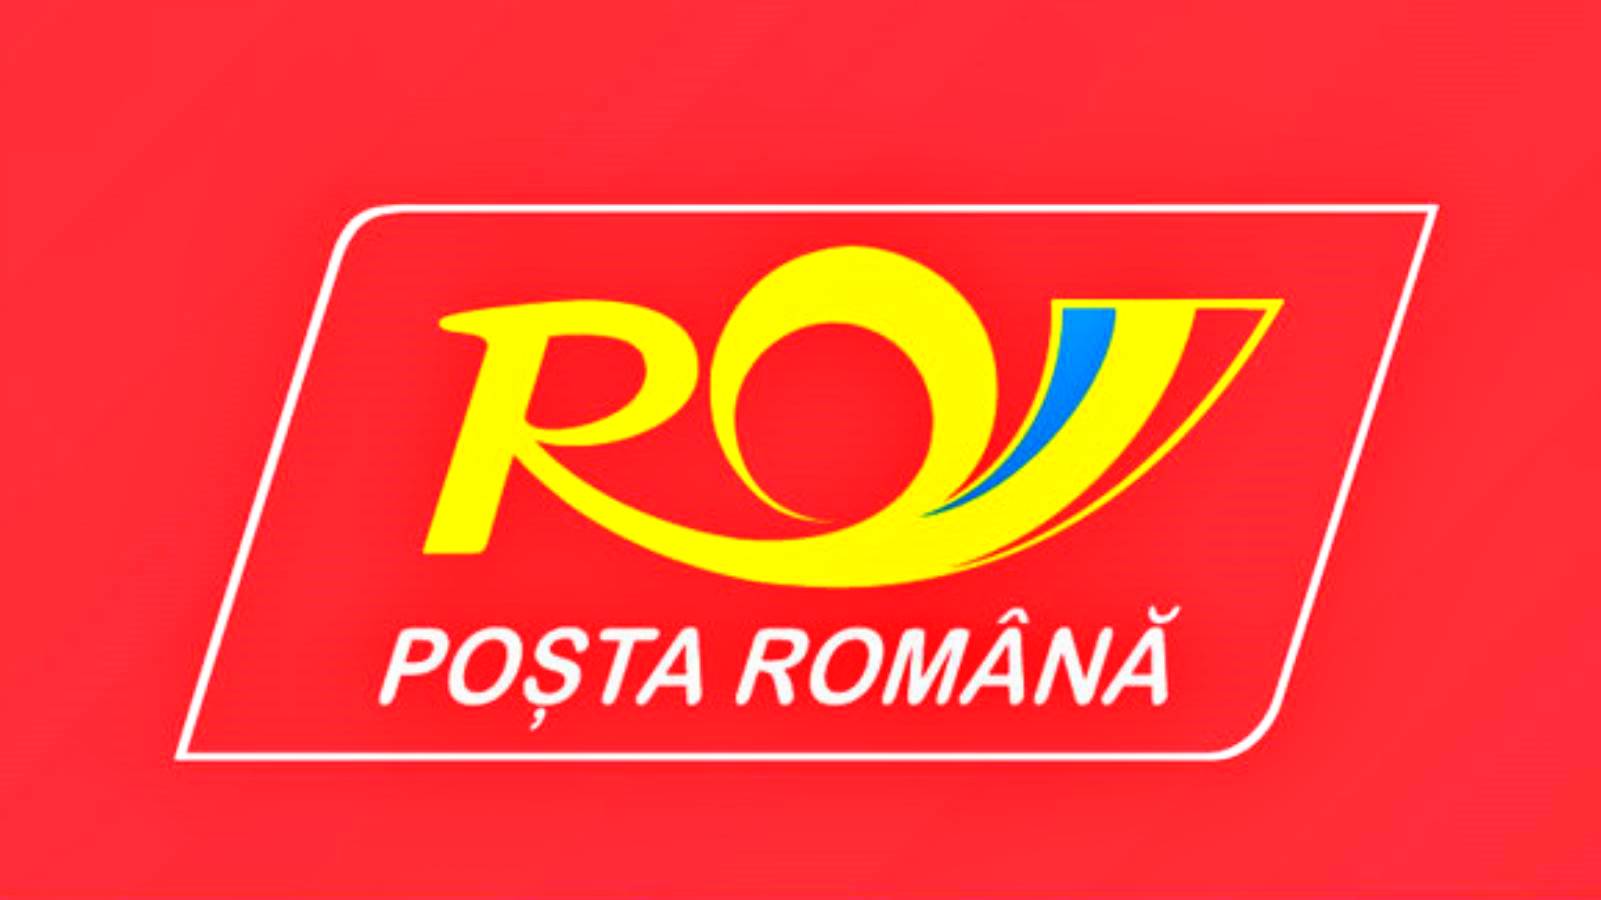 Poste roumaine Ce que vous pouvez faire avec l'application Android